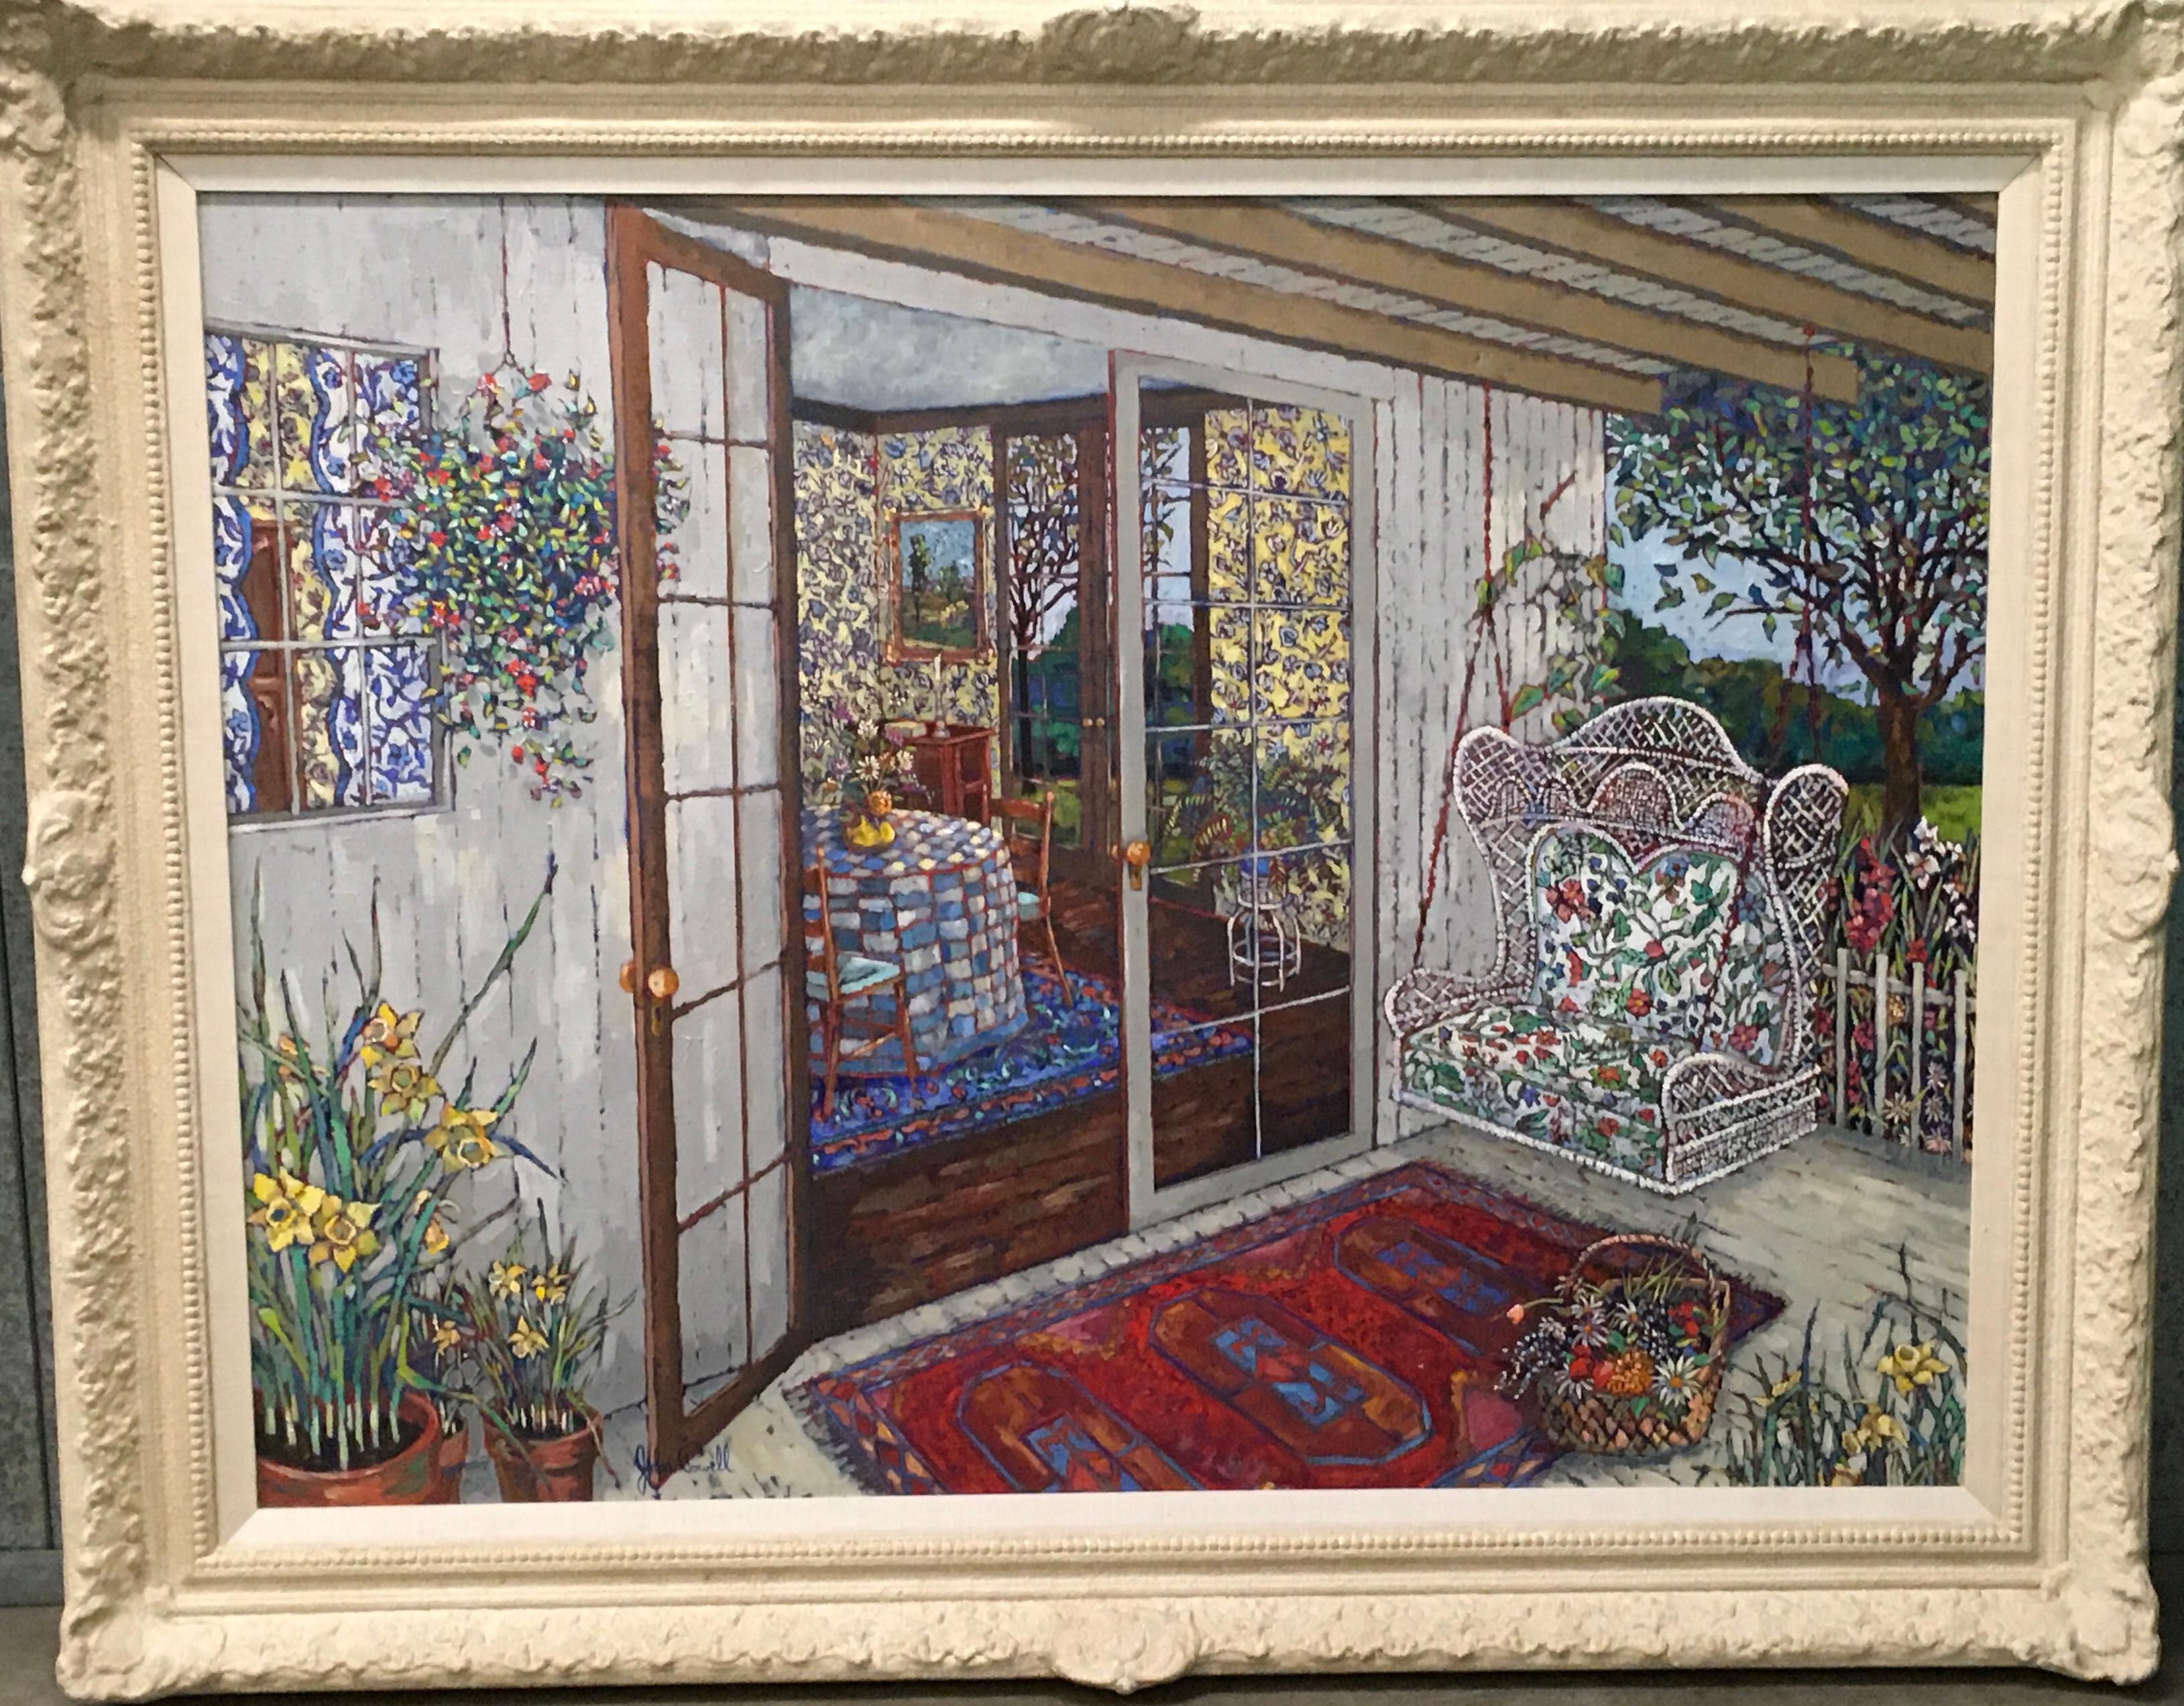 Daffodils et fleurs colorées, porche en osier et paysage du Maine, années 1970, huile/c - Painting de John Powell